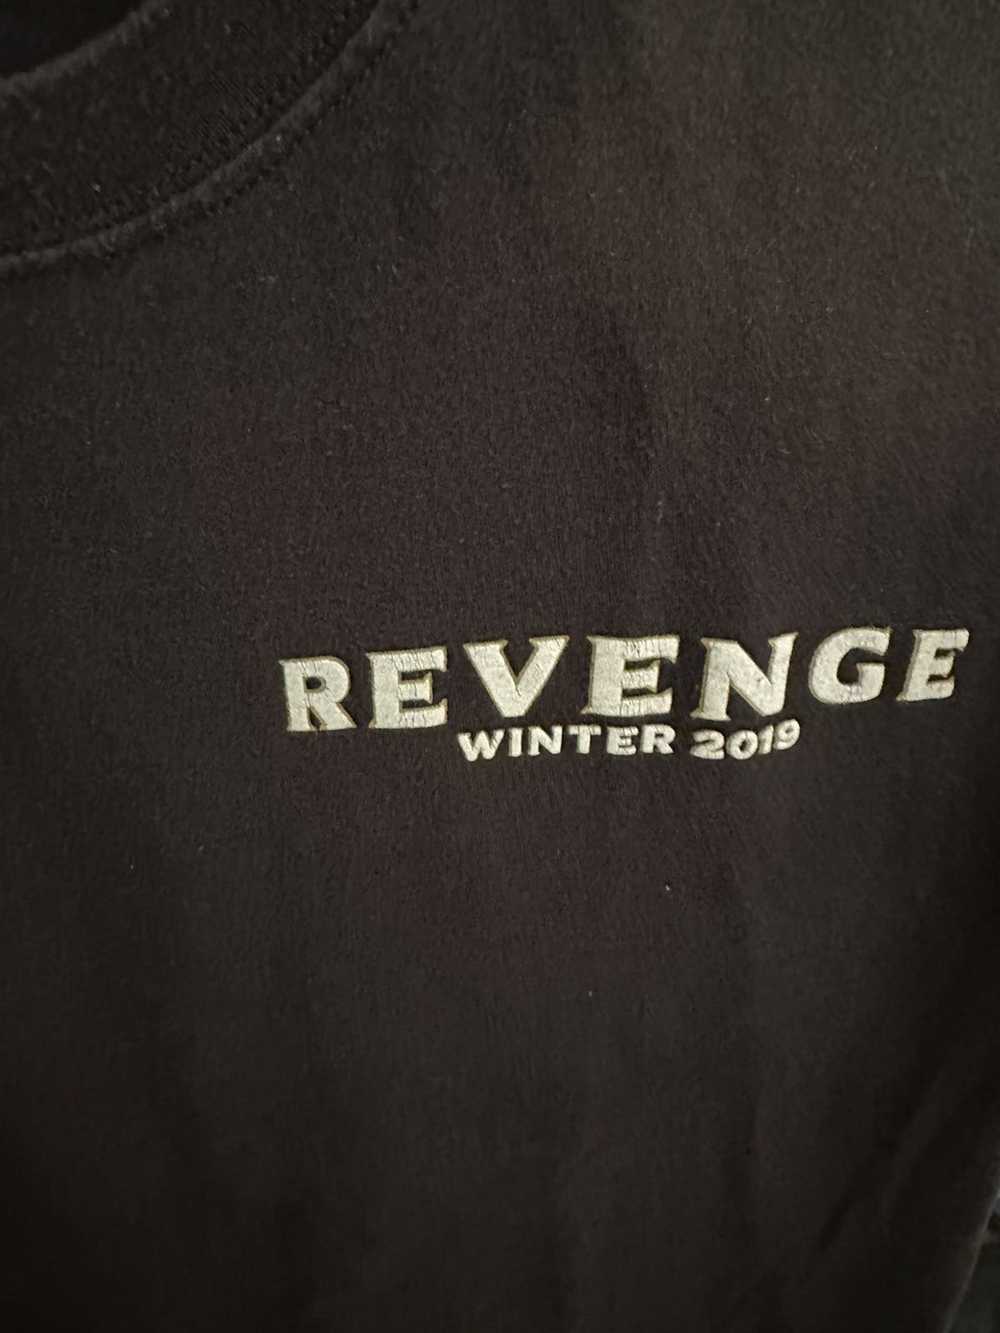 Revenge Revenge - image 4